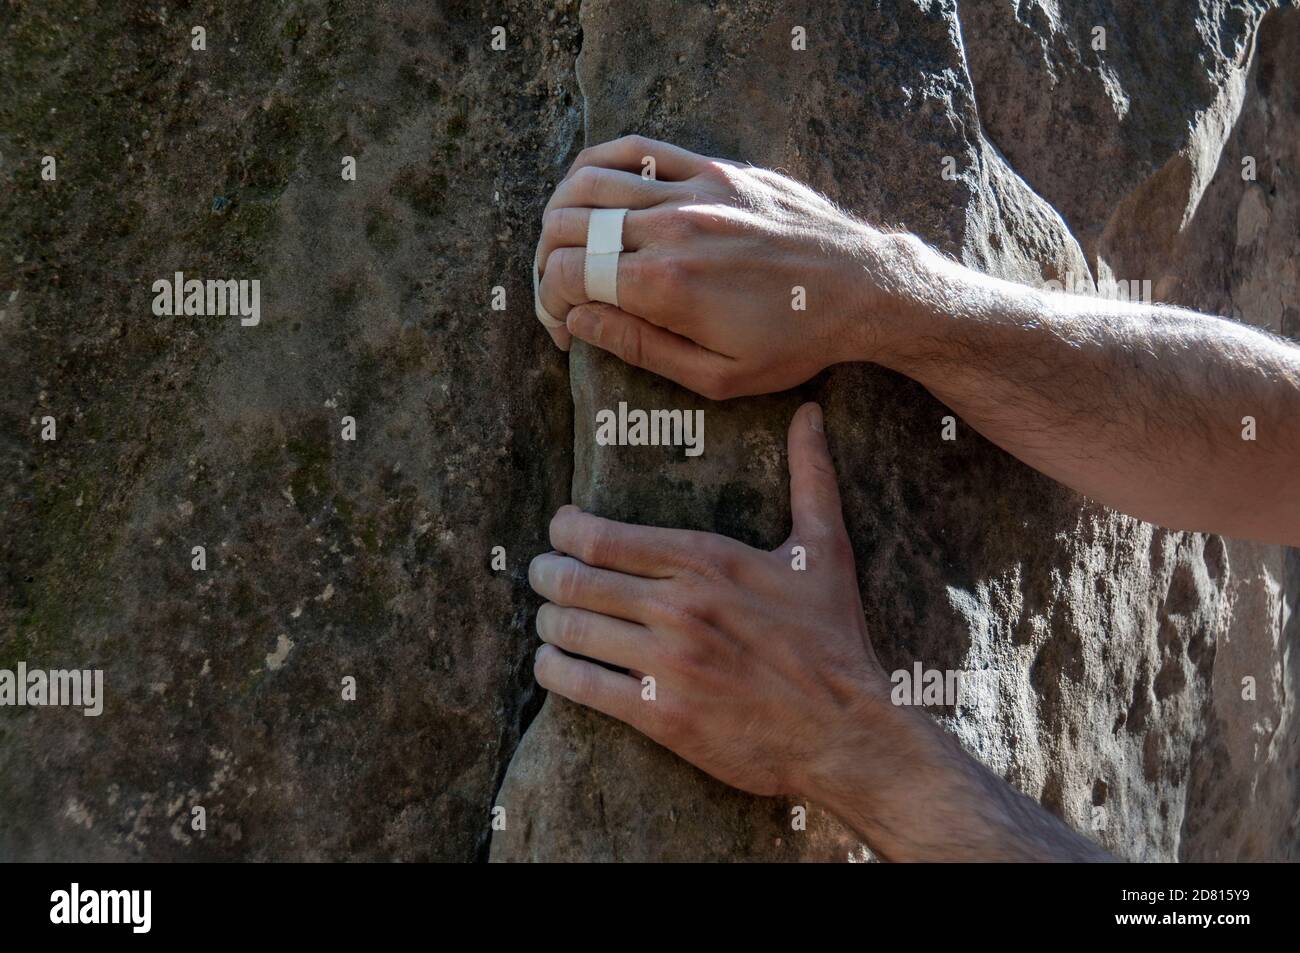 Le mani dell'arrampicatore con nastro fissato alla roccia, pronto a salire. Foto Stock